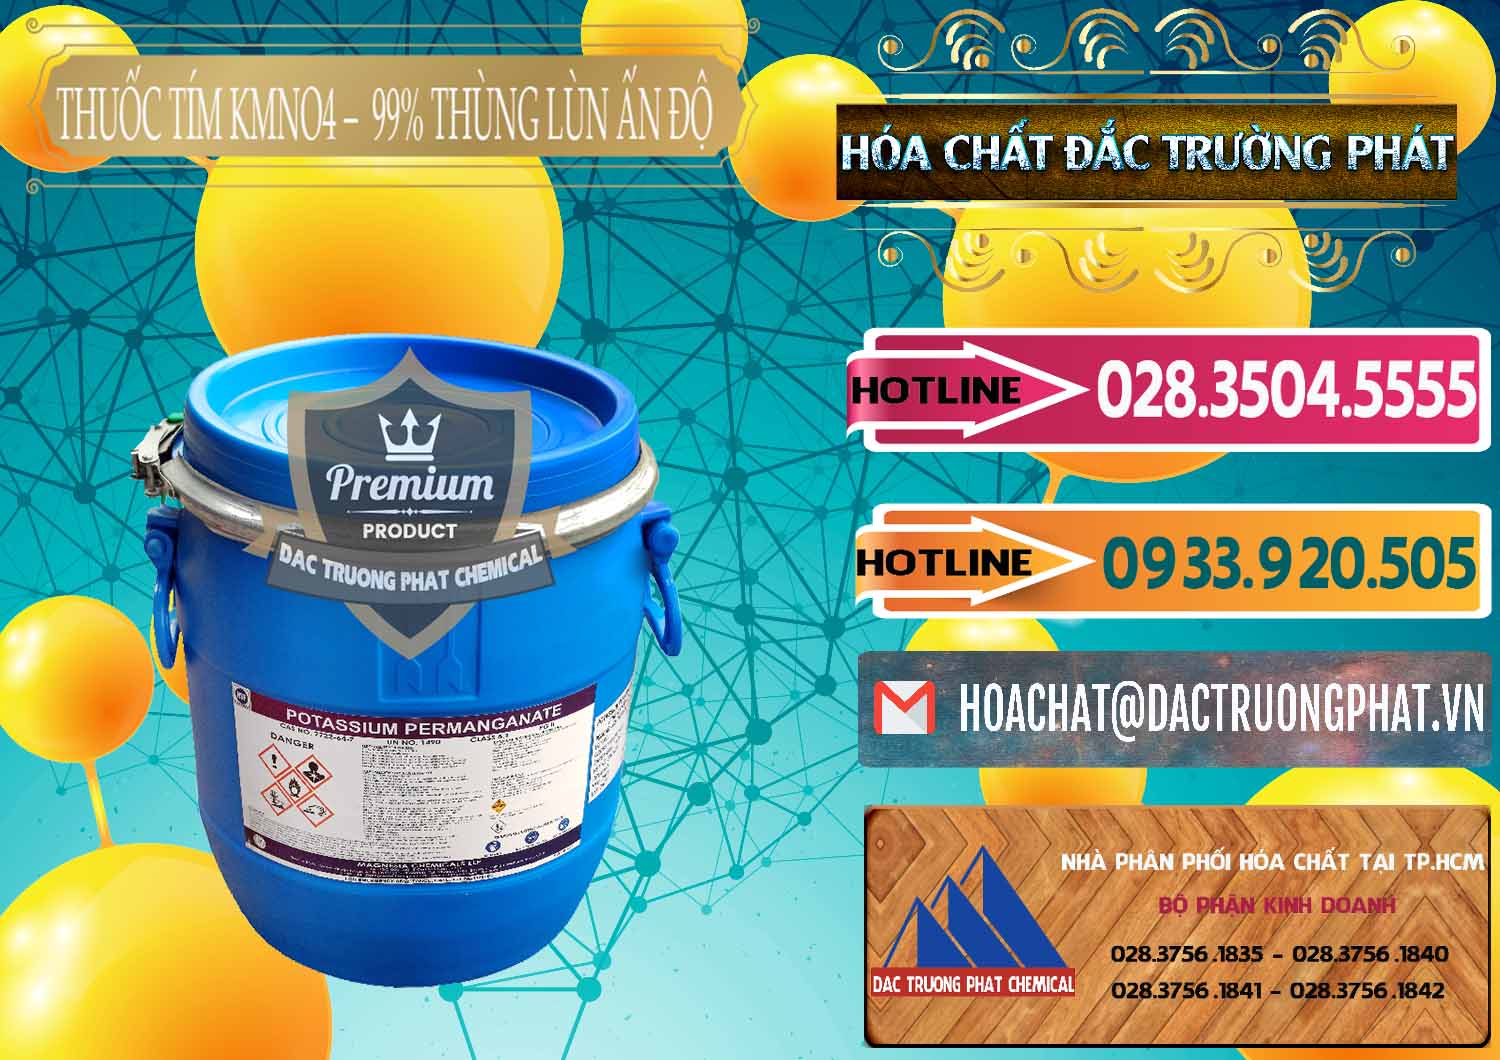 Nơi nhập khẩu - bán Thuốc Tím - KMNO4 Thùng Lùn 99% Magnesia Chemicals Ấn Độ India - 0165 - Chuyên phân phối & bán hóa chất tại TP.HCM - dactruongphat.vn